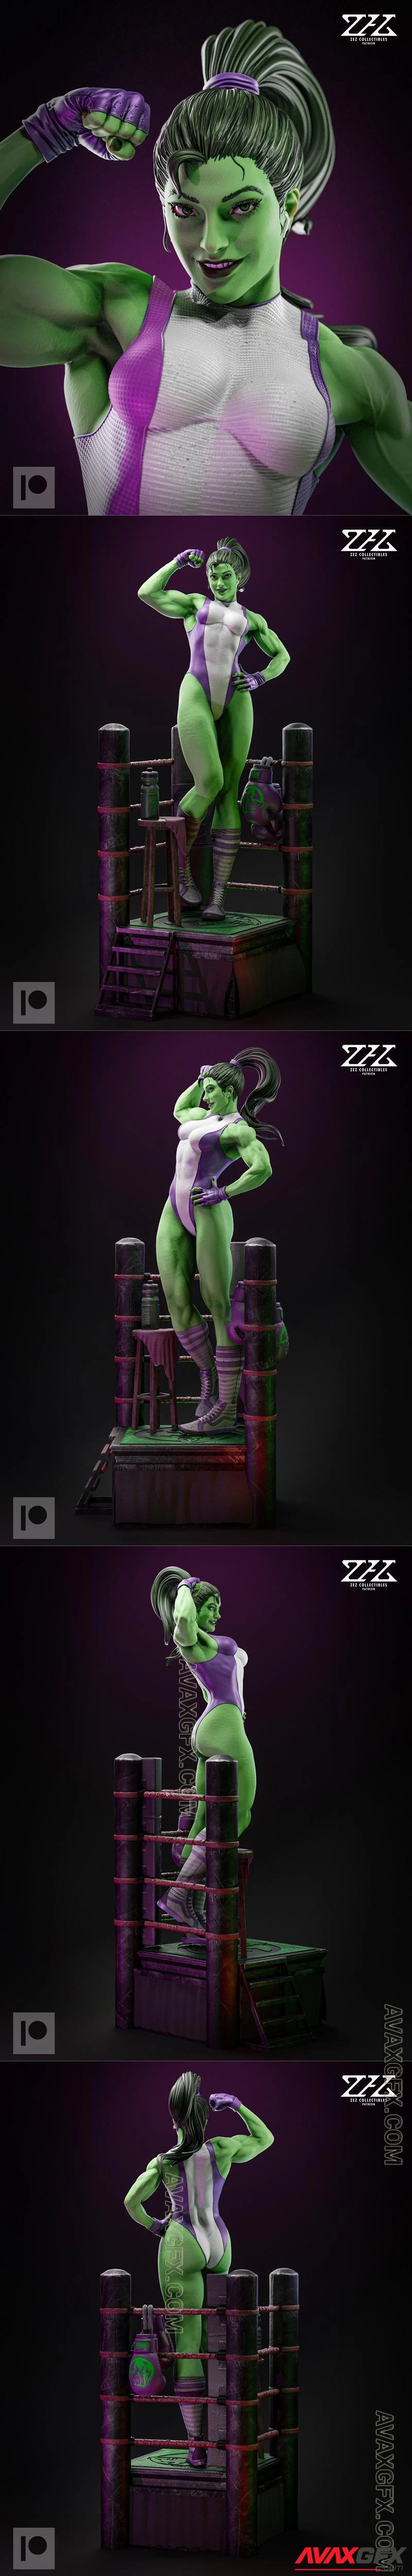 ZEZ Studios - She-Hulk